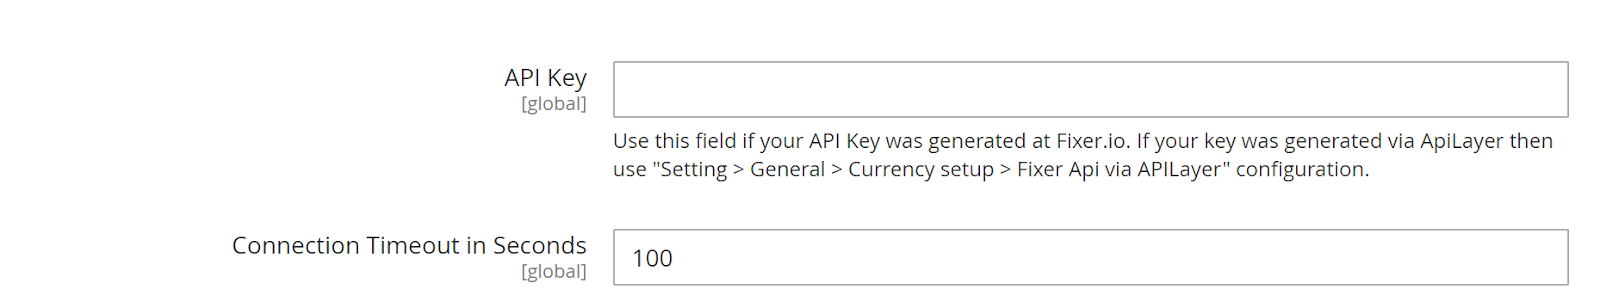 Enter your API key